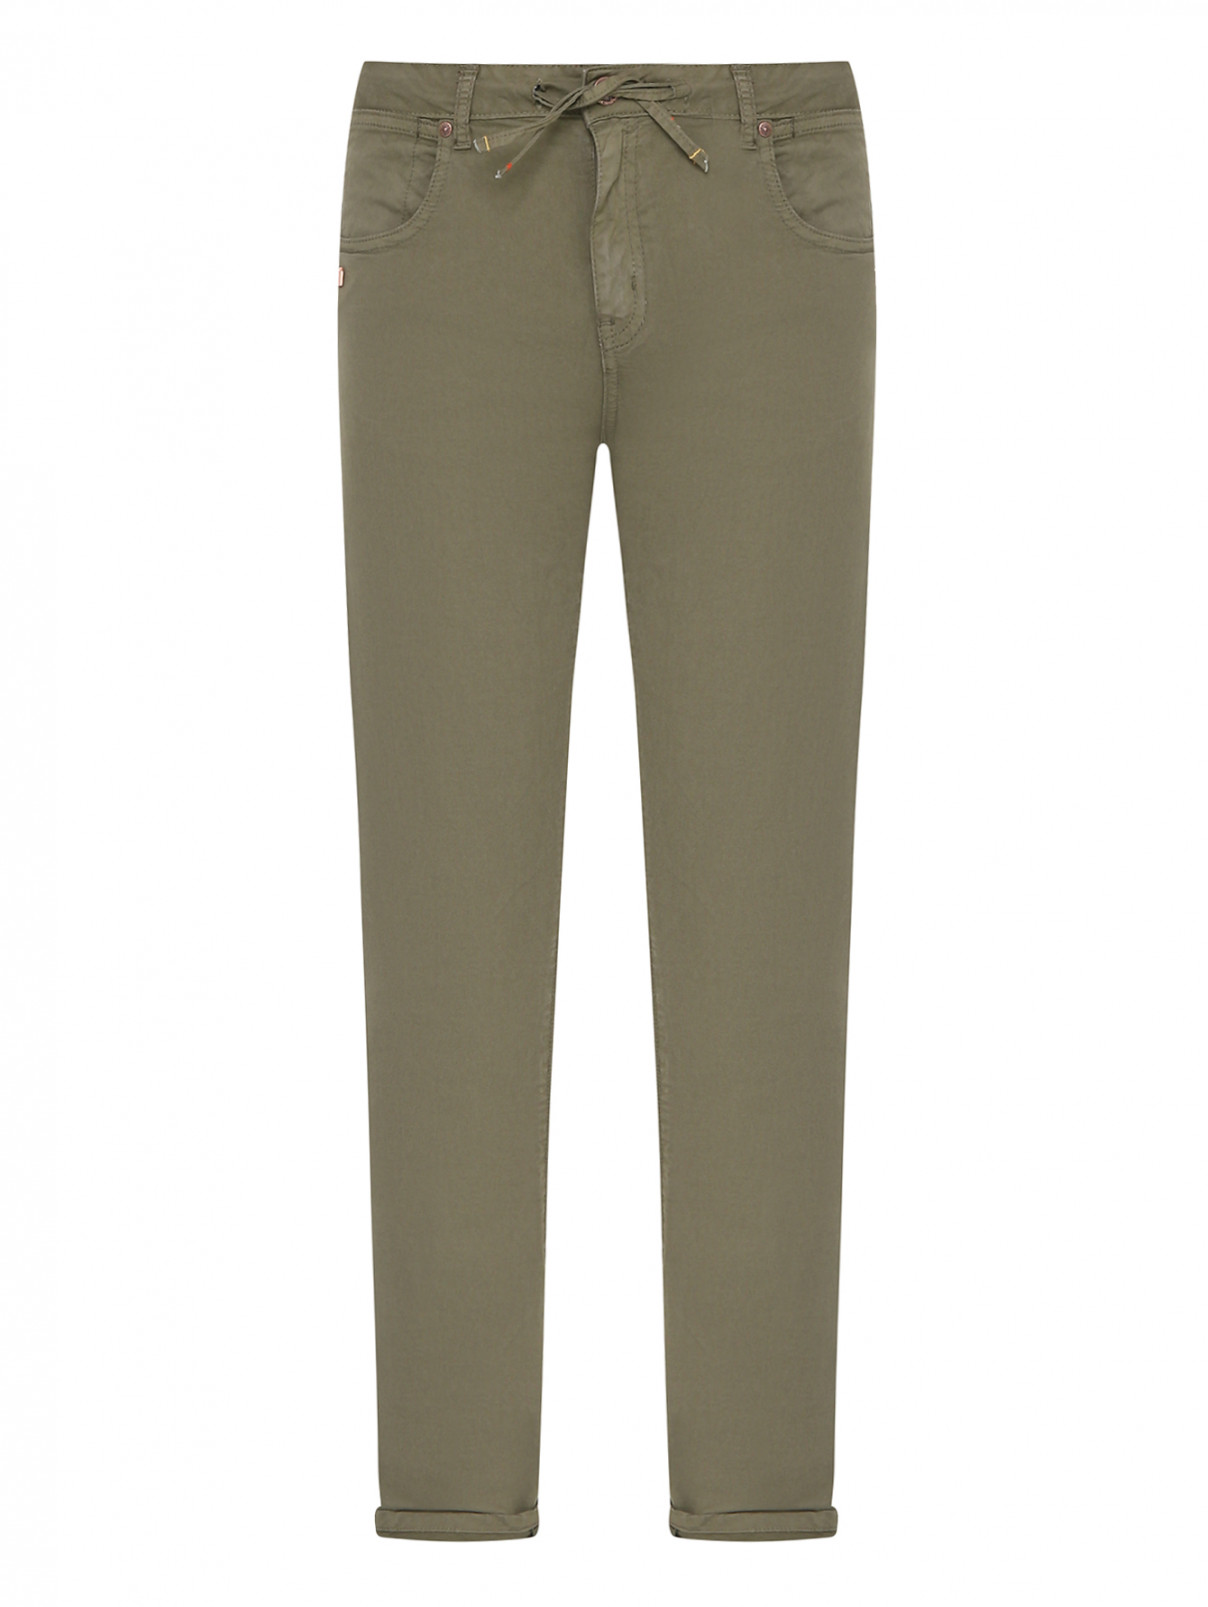 Однотонные брюки из хлопка Daniele Alessandrini  –  Общий вид  – Цвет:  Зеленый